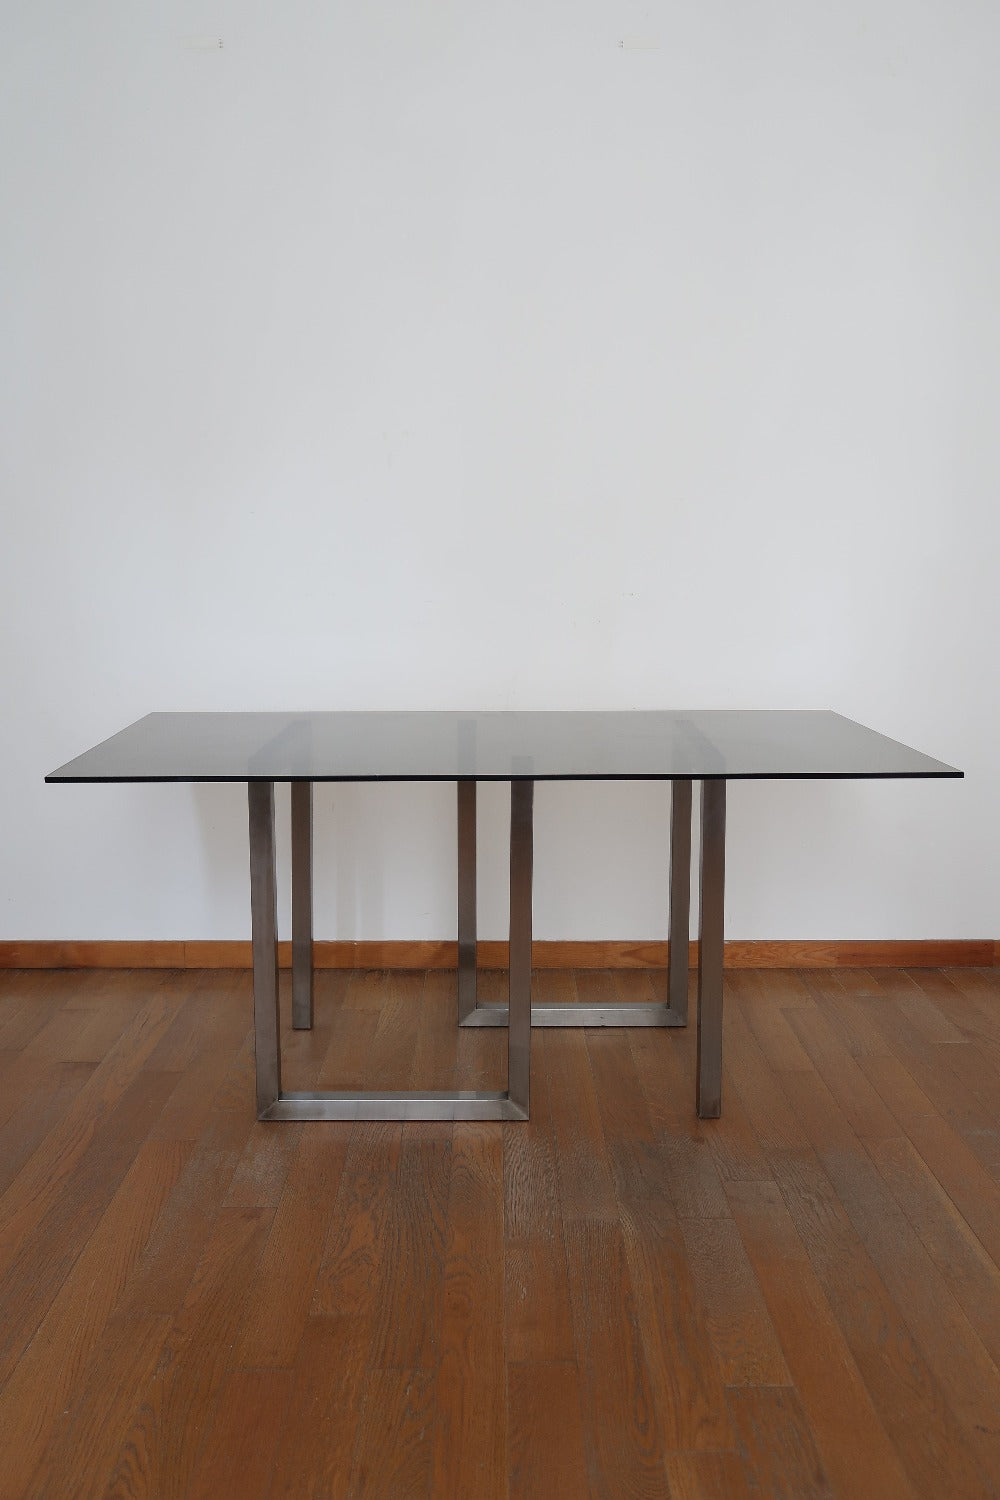 table à manger roche bobois verre fumé space age design chrome pietement métal vintage moderniste